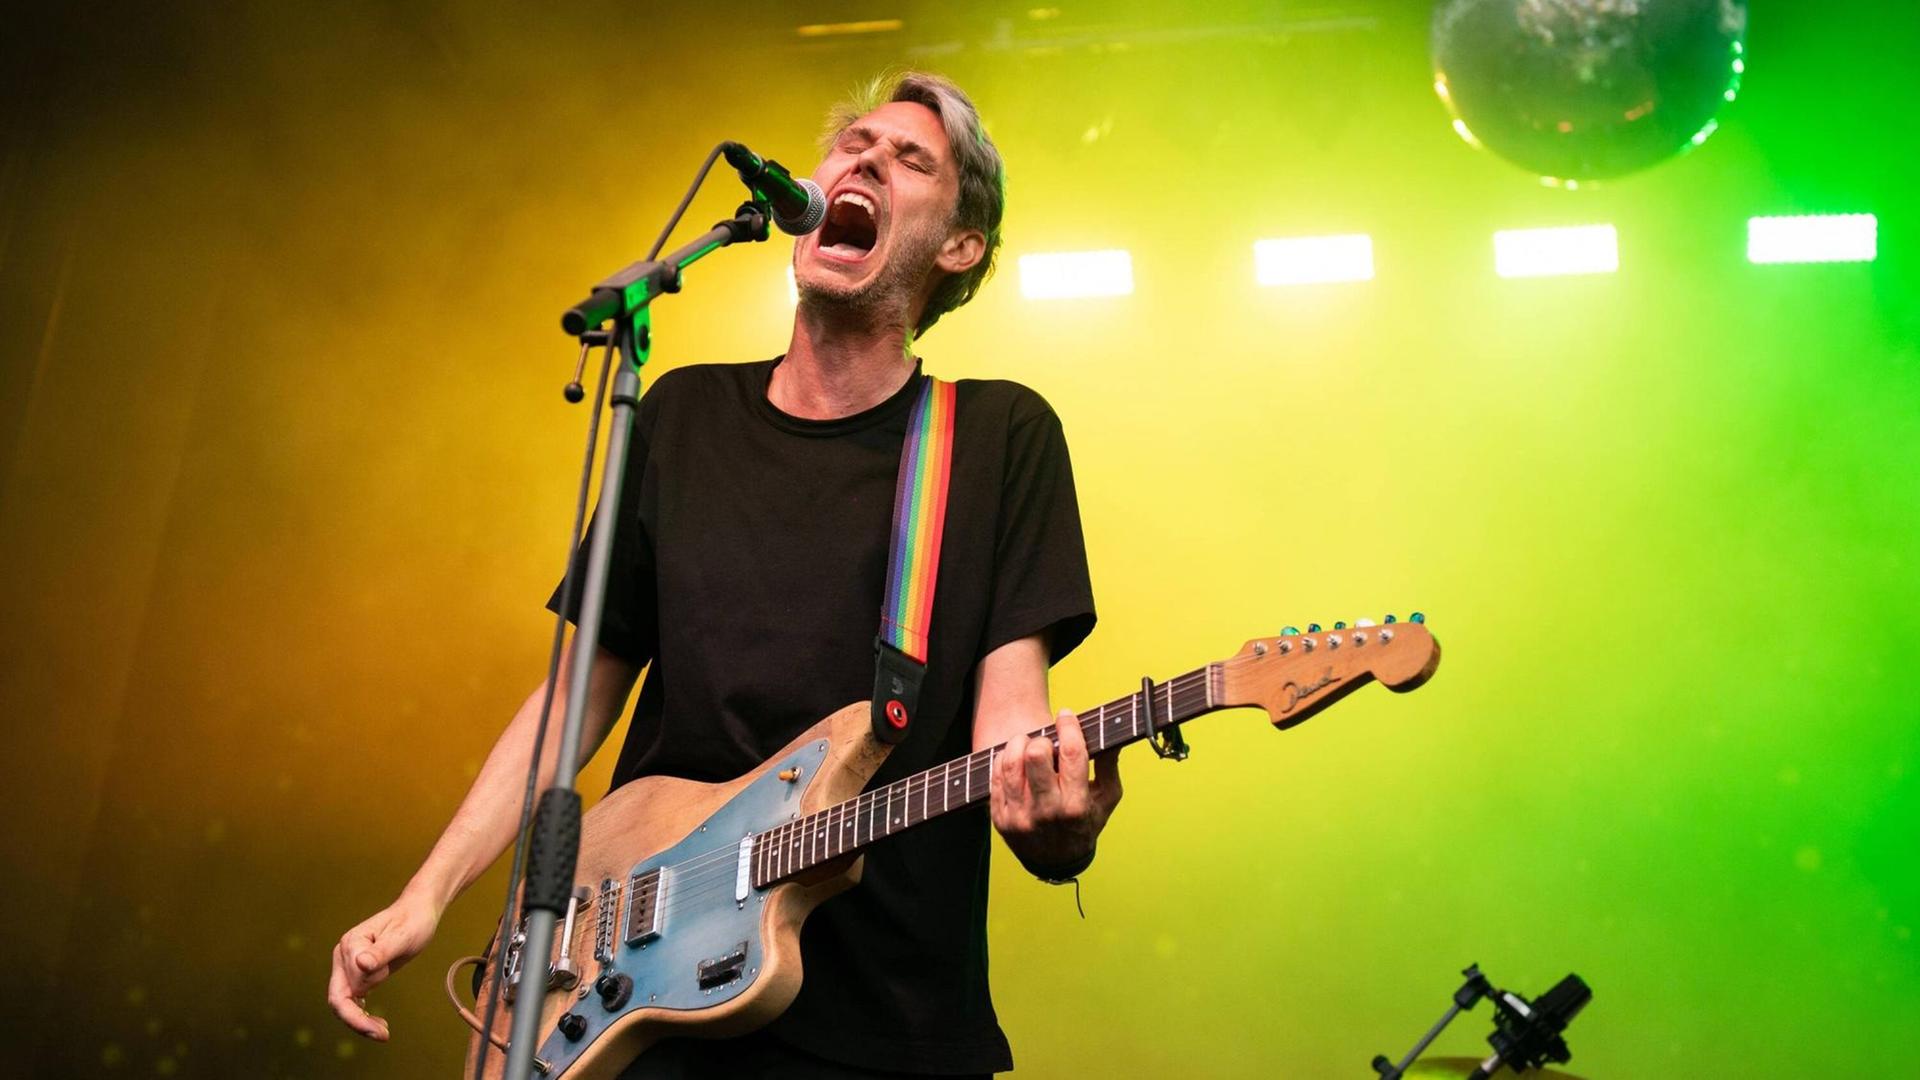 Dirk von Lowtzow steht mit E-Gitarre und singt in ein Standmikrofon, im Hintergrund ist ein gelb-grüner Farblichtverlauf und eine Diskokugel.